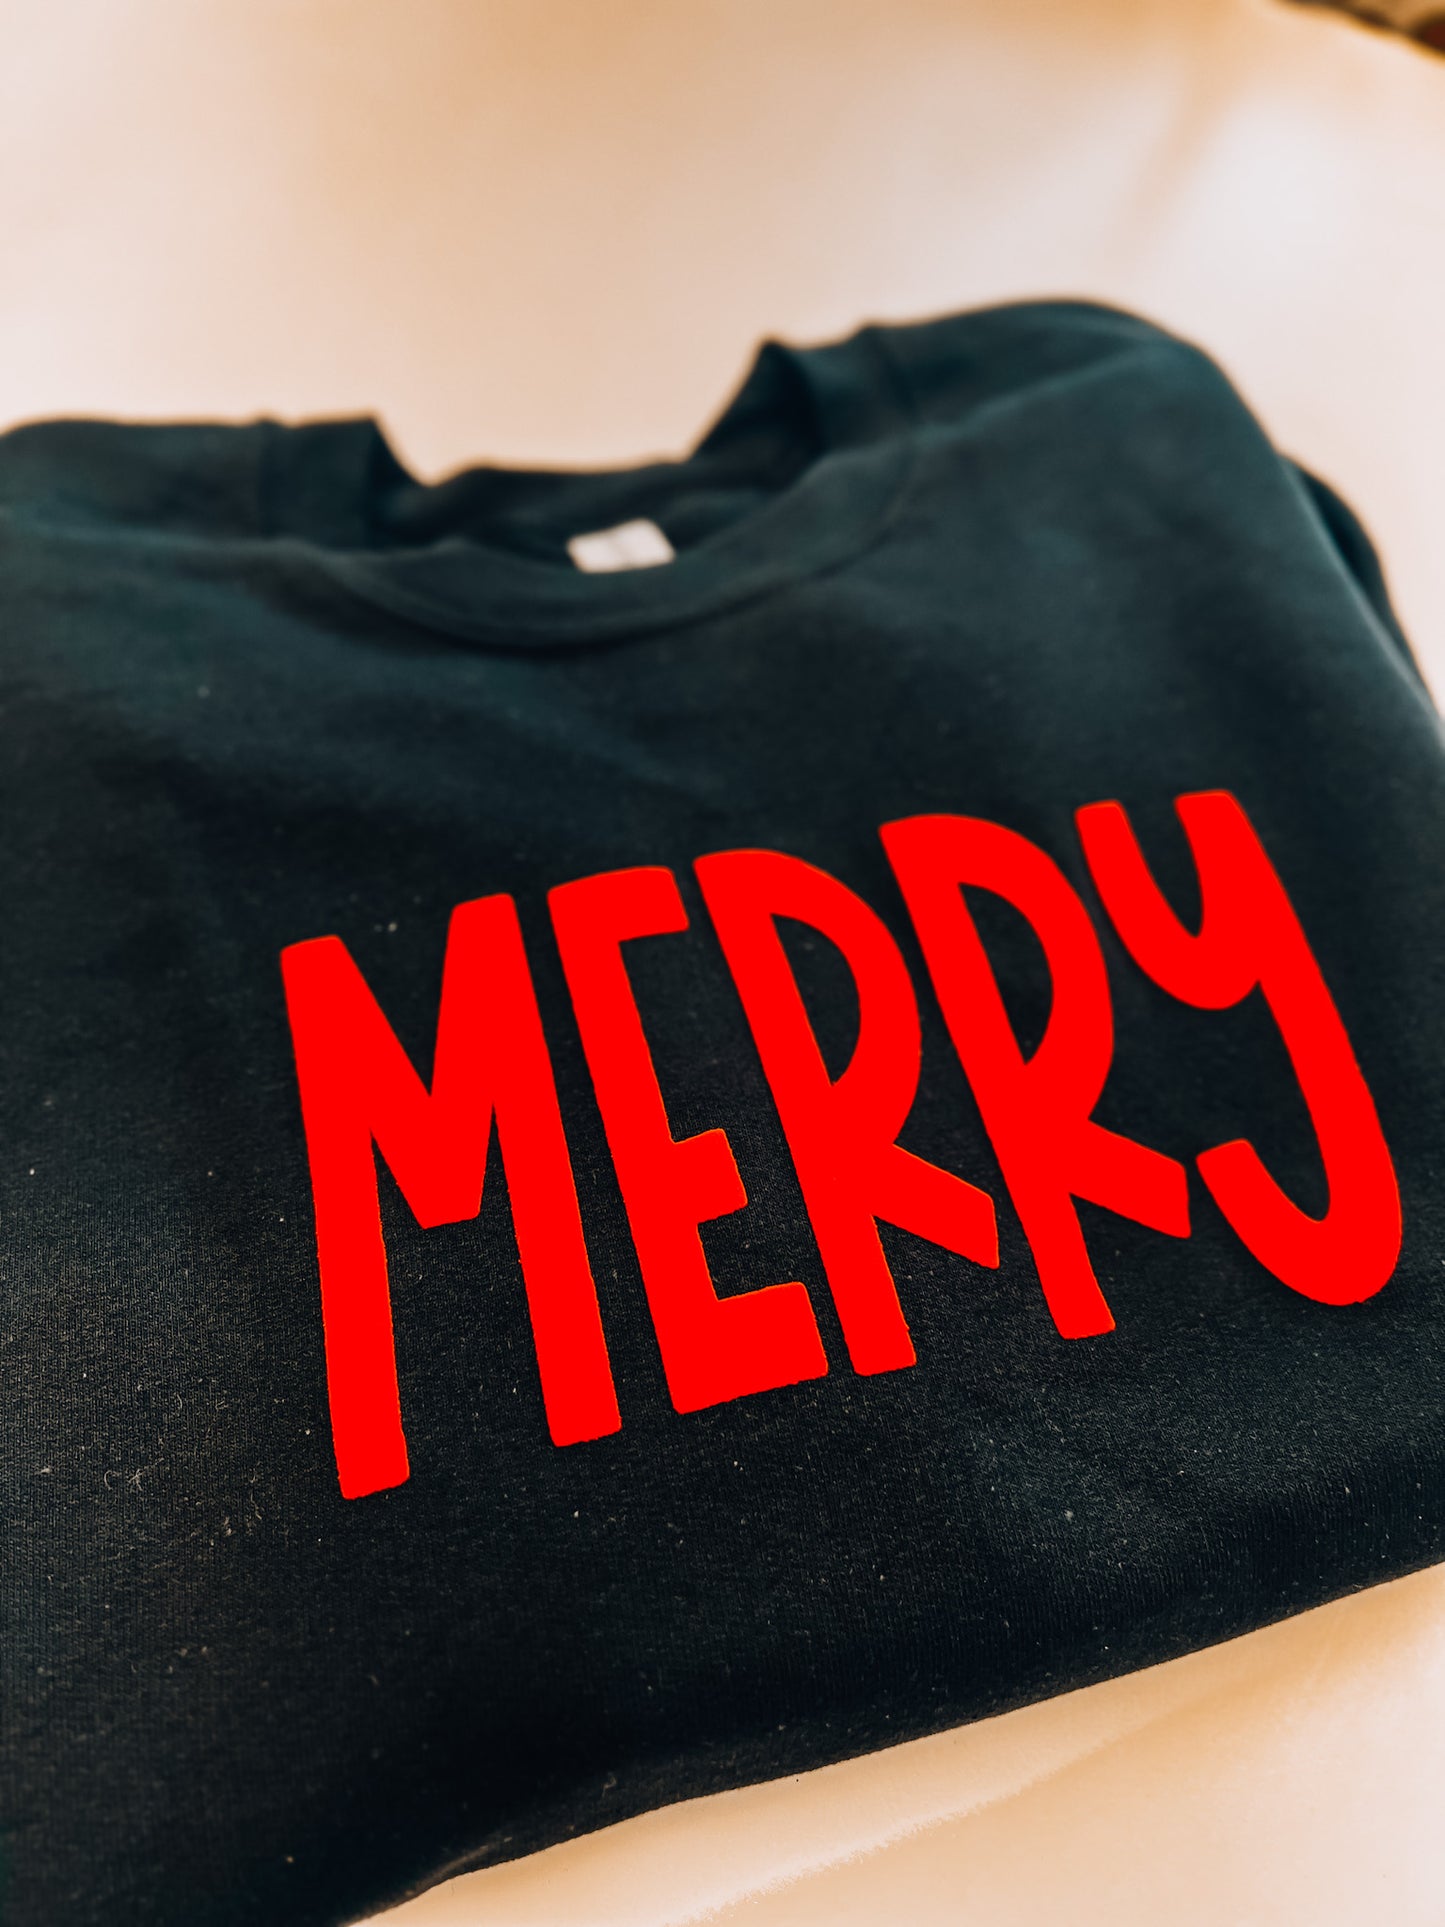 2023 Christmas - Merry Sweatshirt